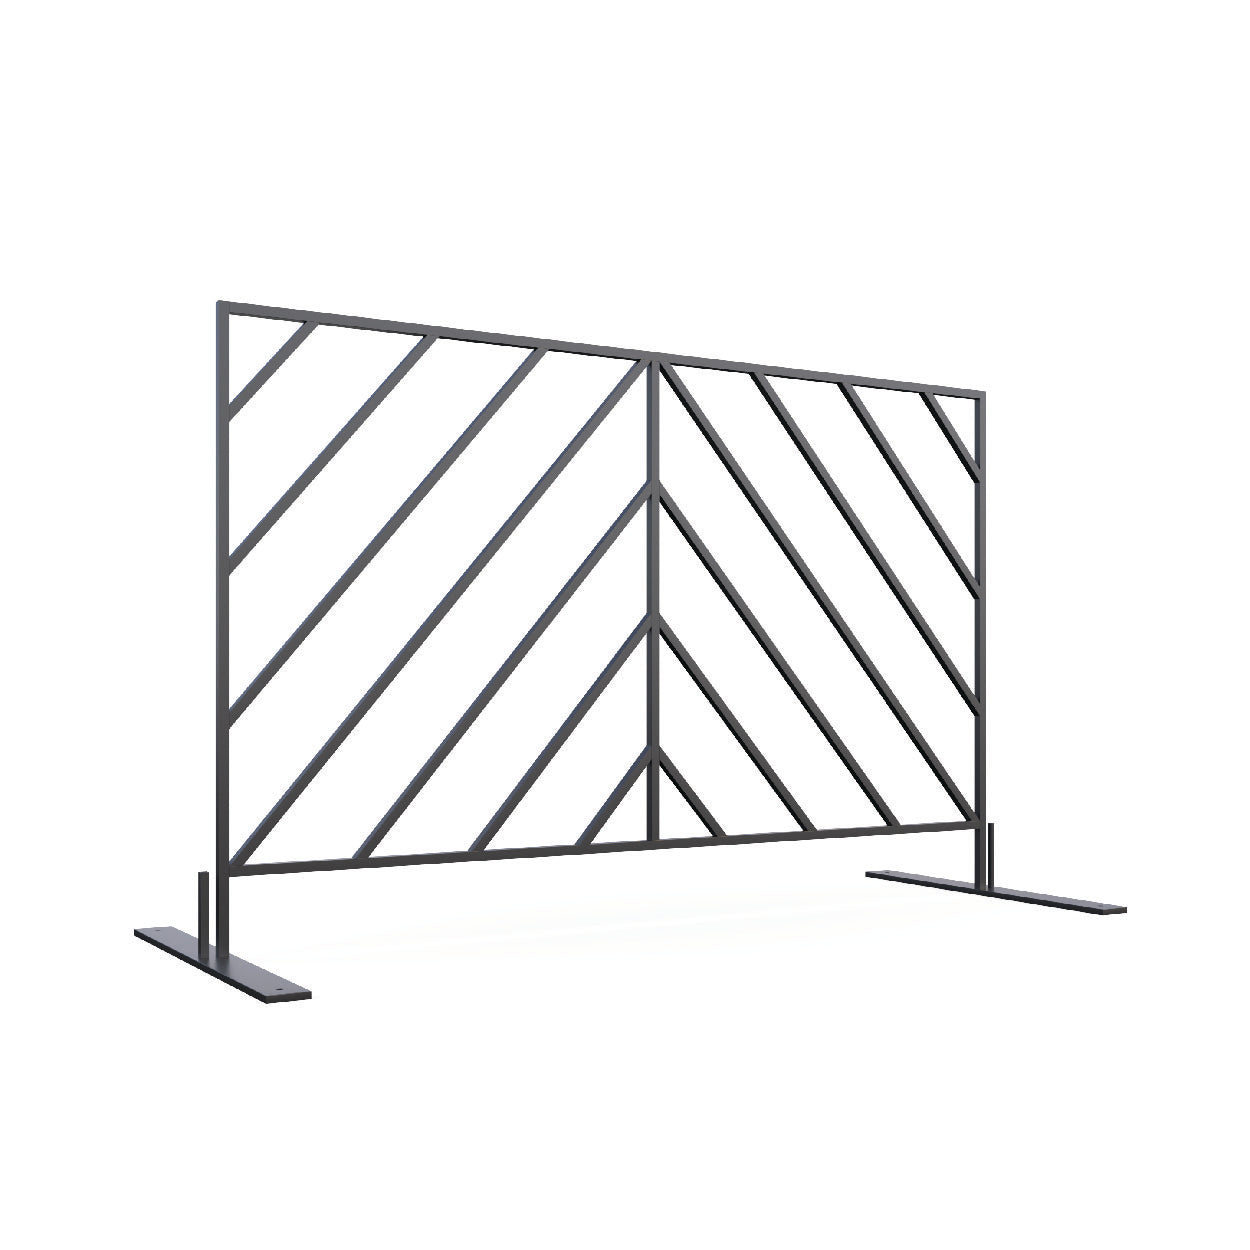 Mod-Elite Fence | Black | 60ft Kit with Cart